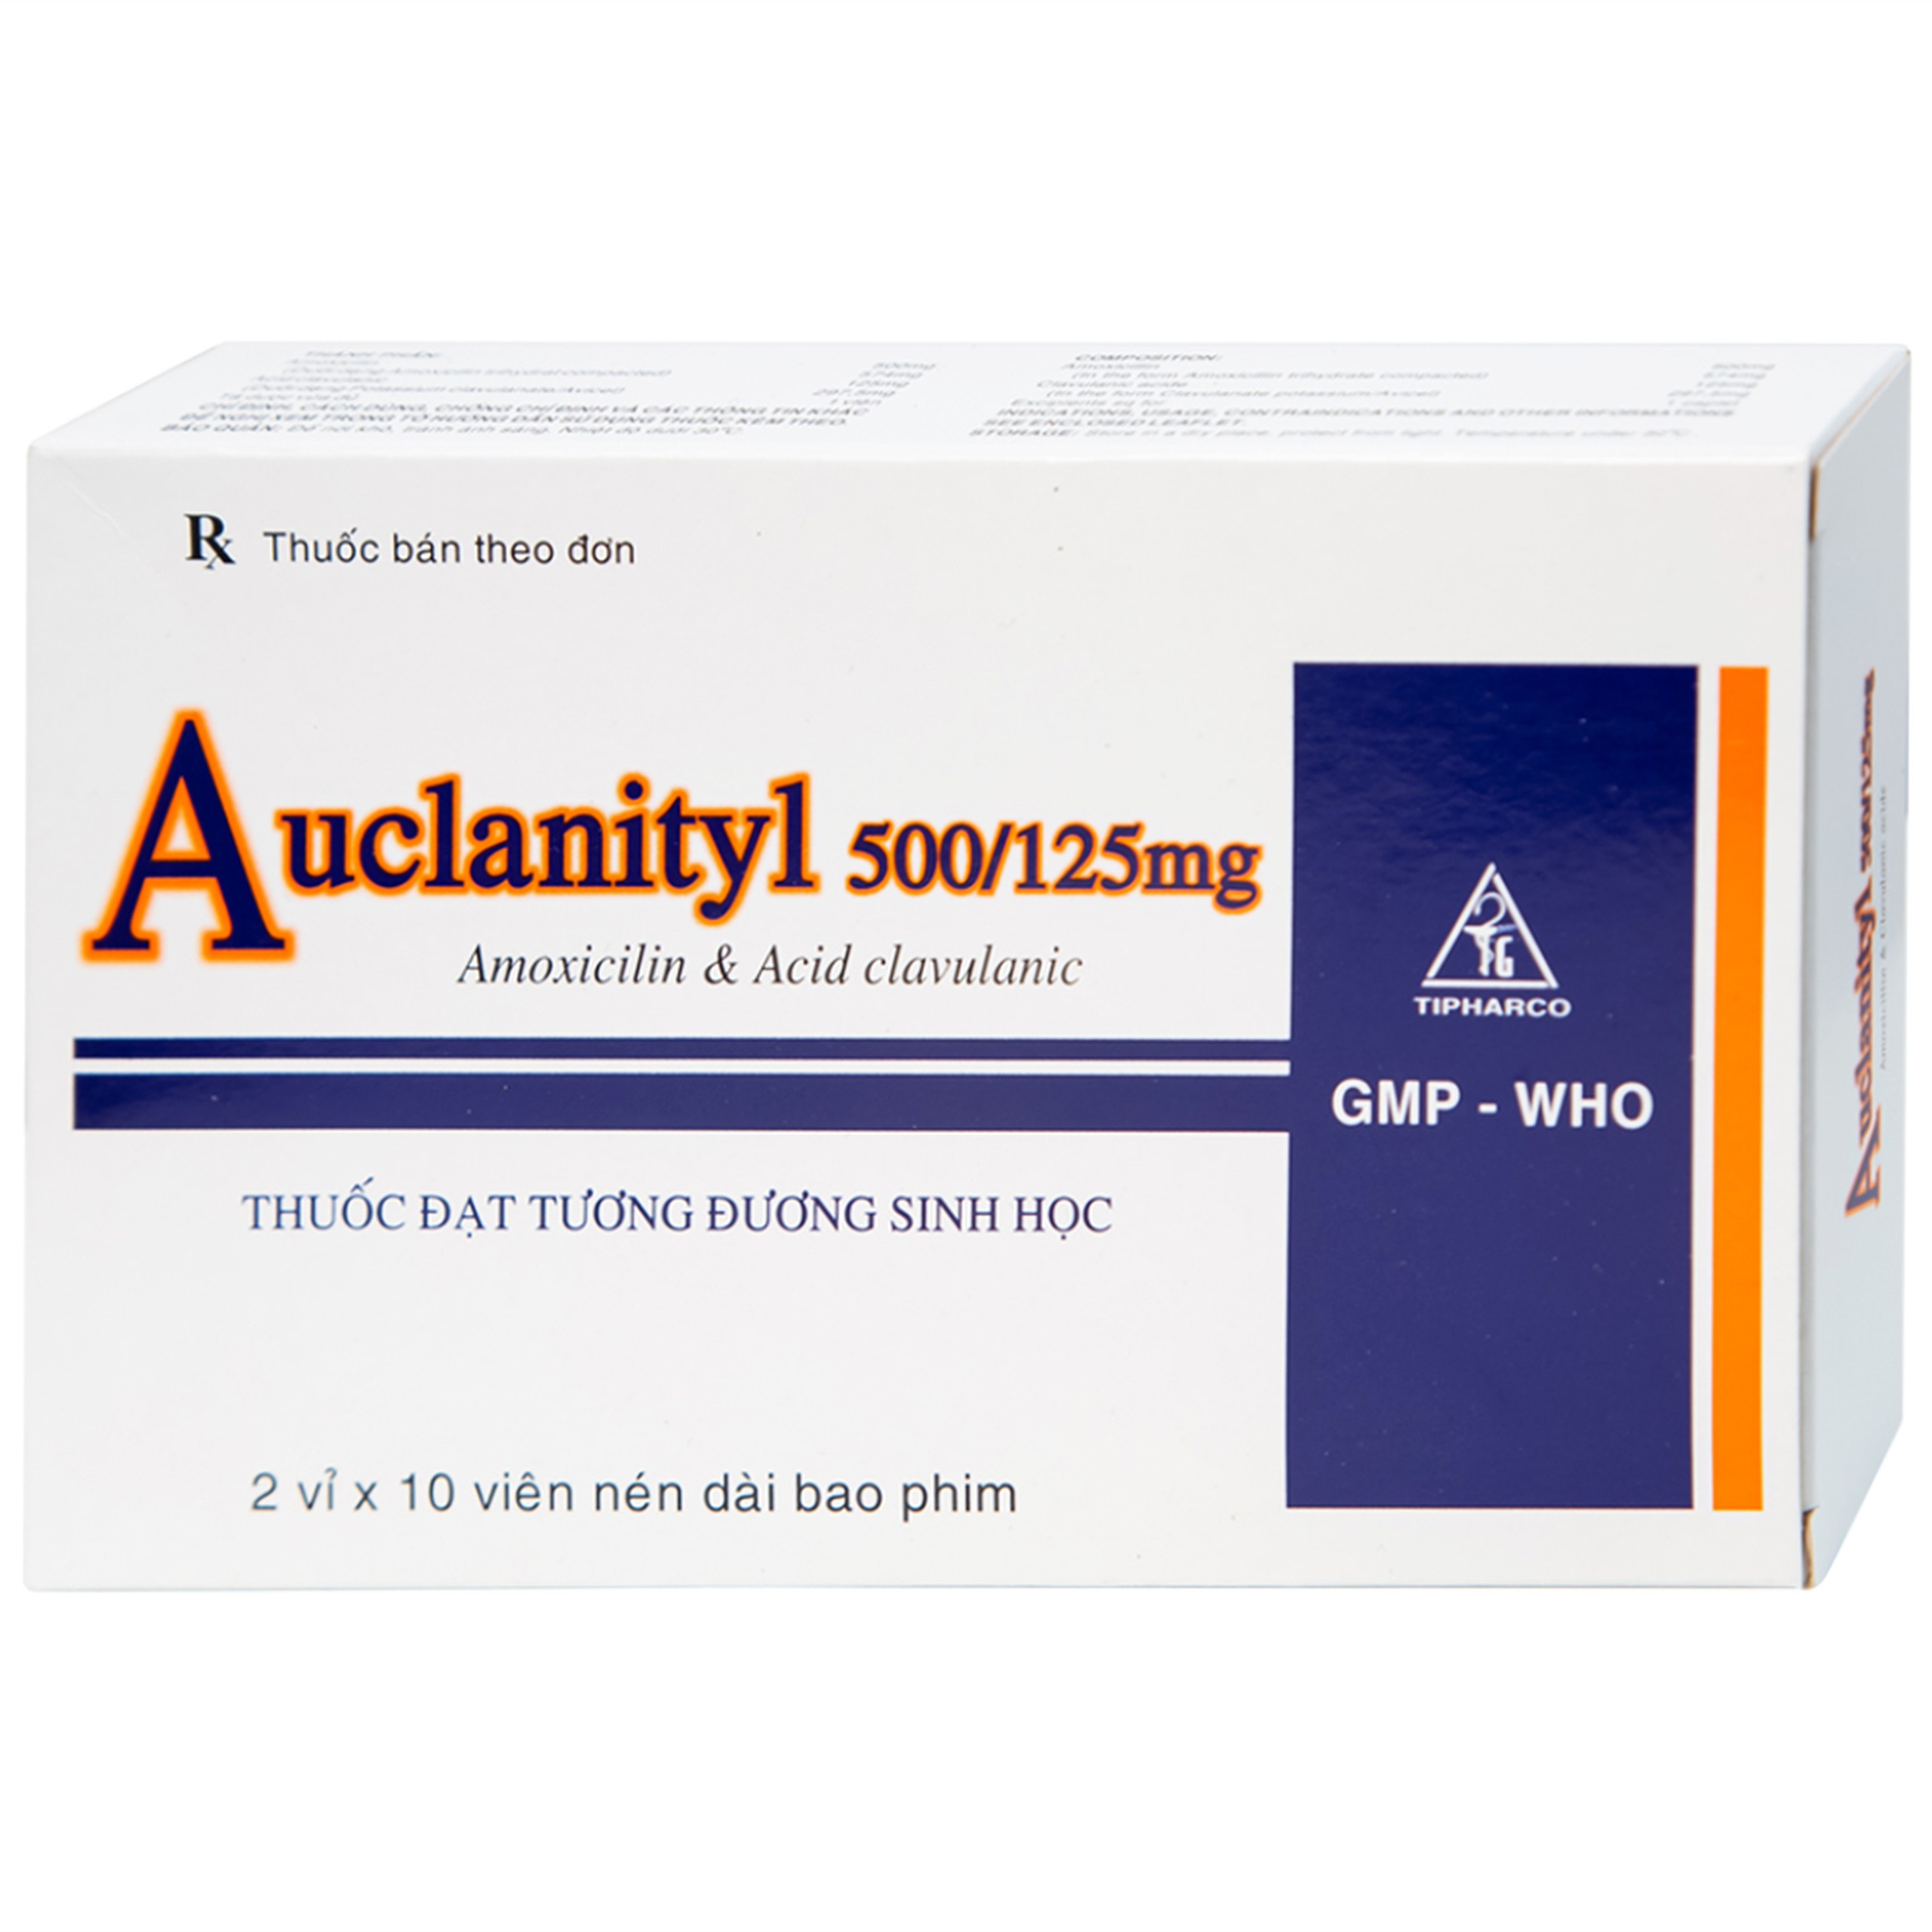 Thuốc Auclanityl 500/125mg Tipharco điều trị nhiễm khuẩn (2 vỉ x 10 viên)